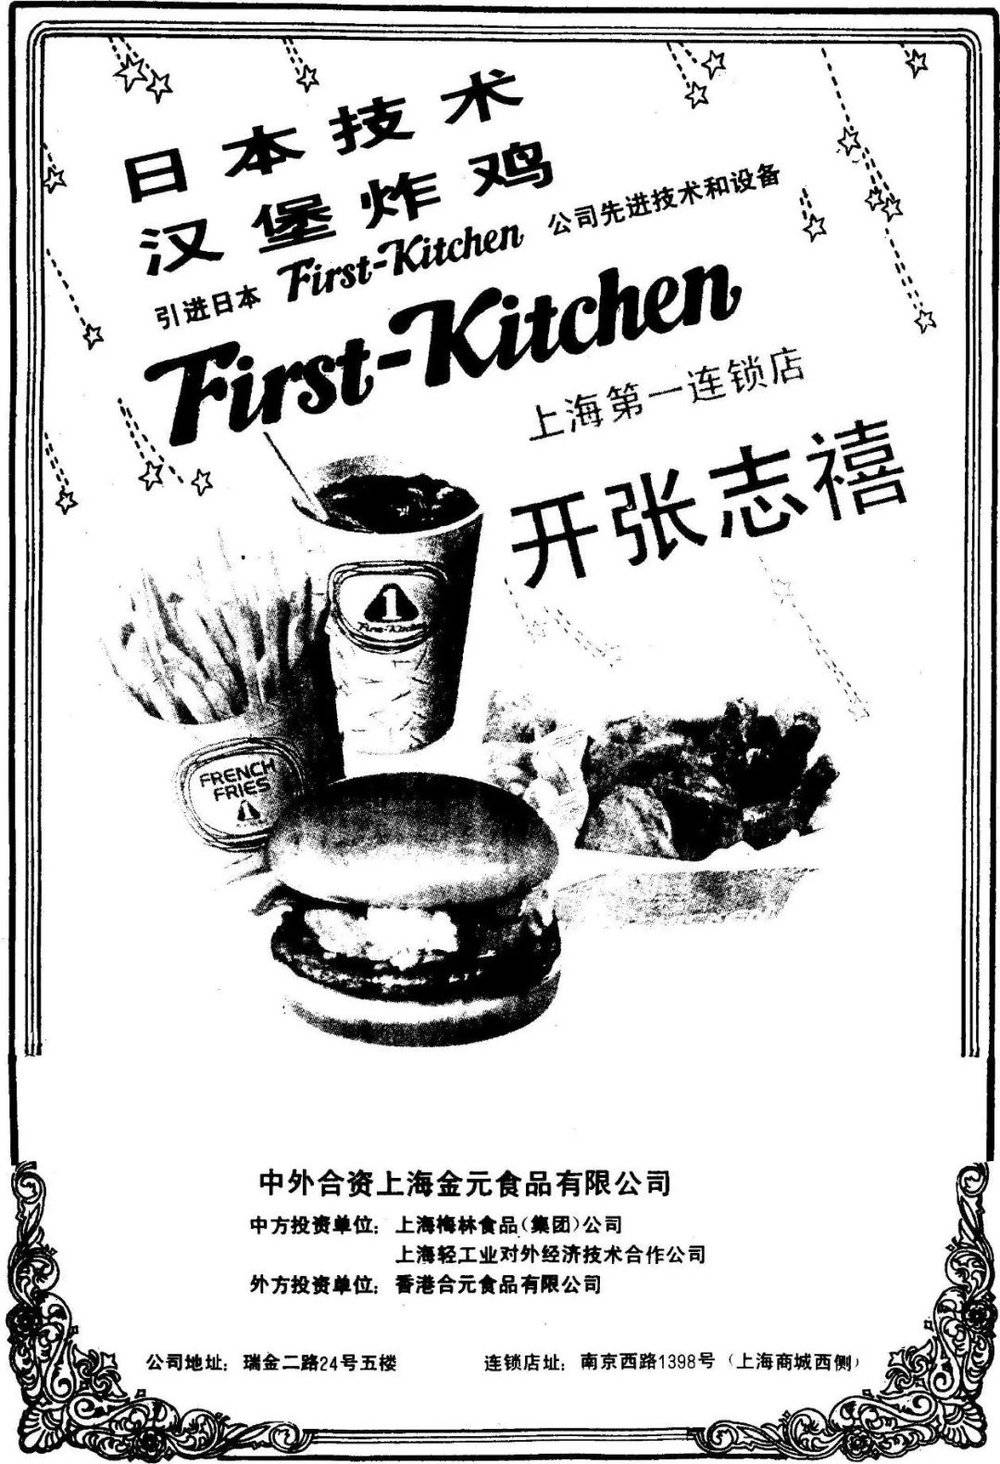 “发势庆”刊登在上海报纸上的广告，品牌名是First-Kitchen的谐音